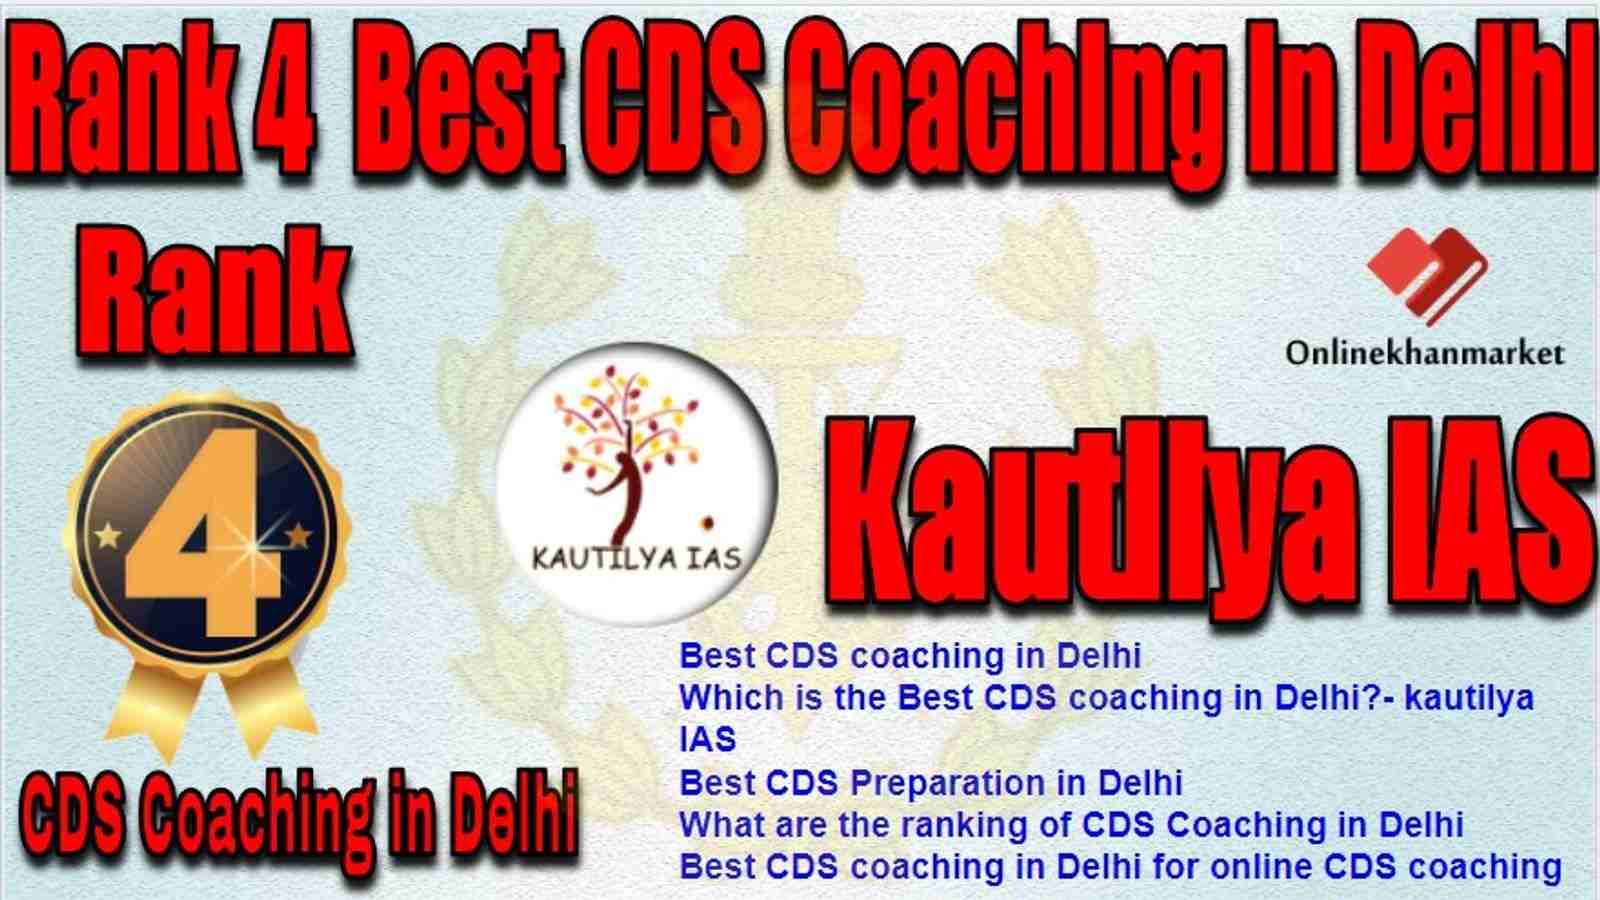 Rank 4 Best CDS Coaching in delhi